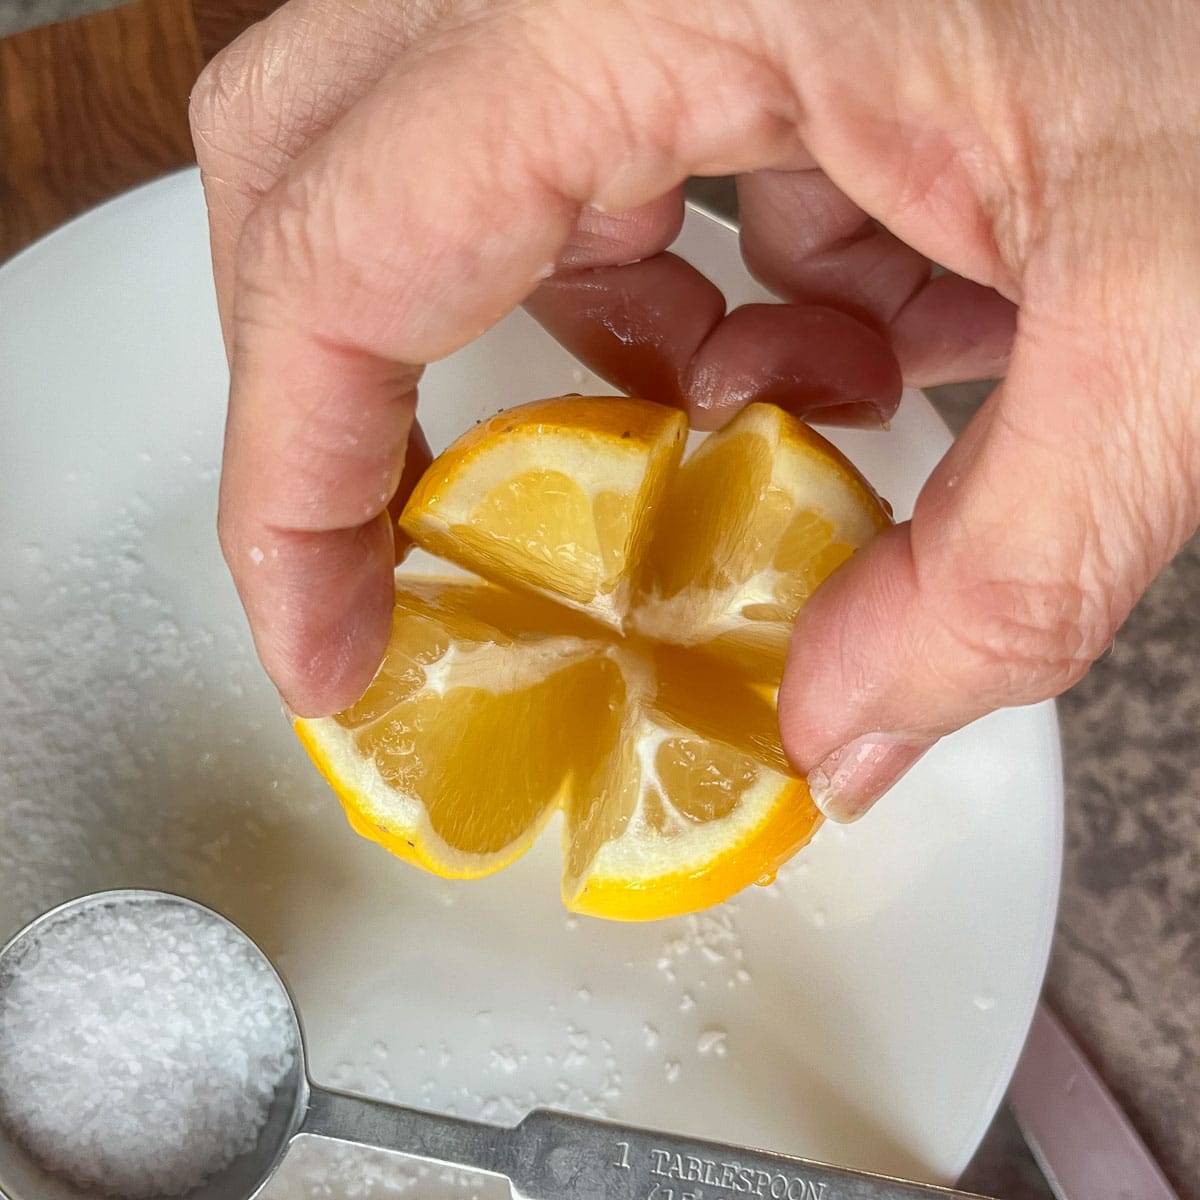 lemon sliced in quarters